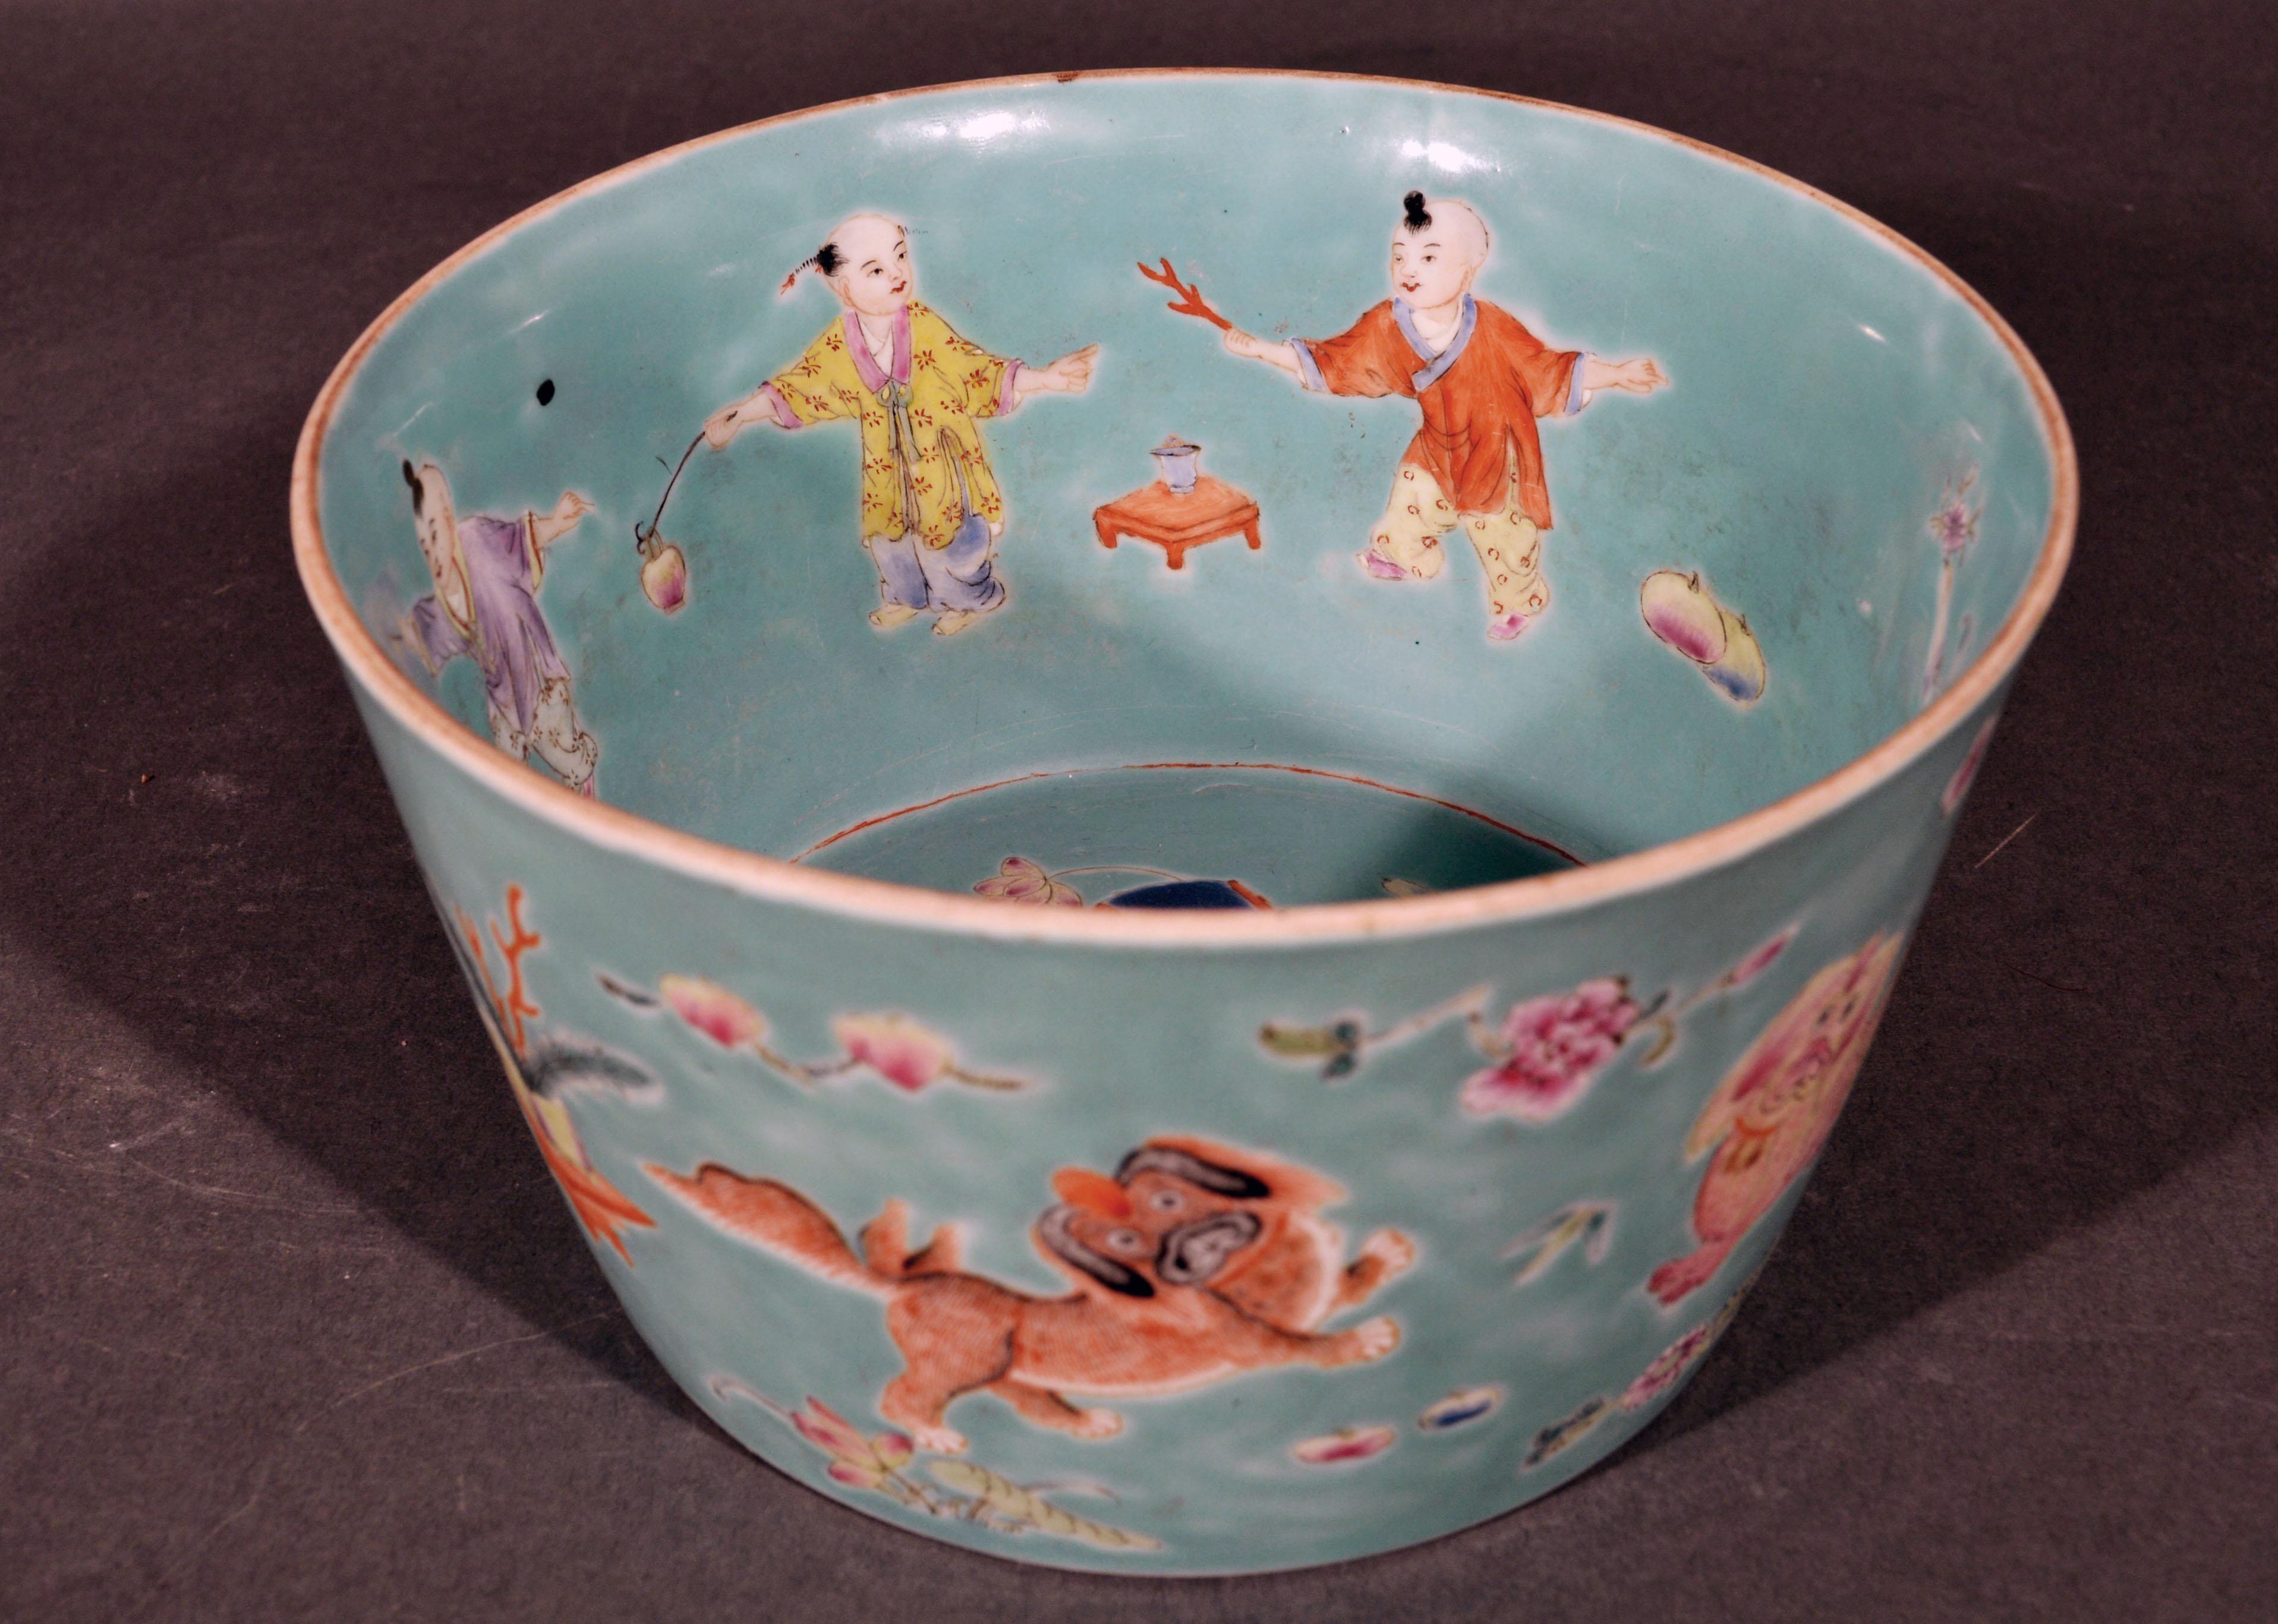 19th Century Chinese Porcelain Turquoise Jardinière of Bowl with Chinese Boys & Pekingese Dog